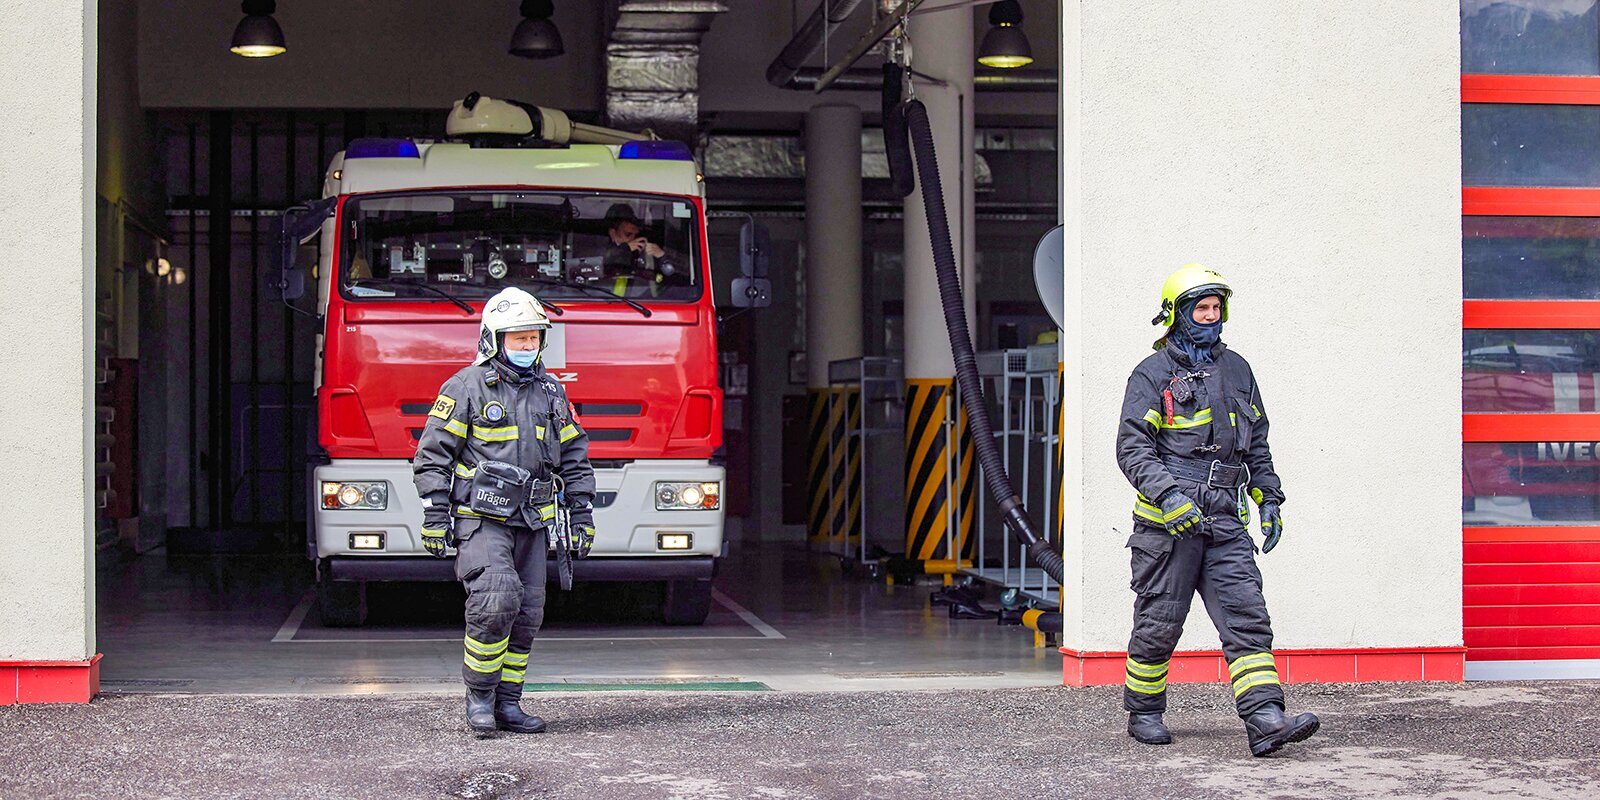 Около 11 новых пожарных депо появятся в Москве к 2025 году